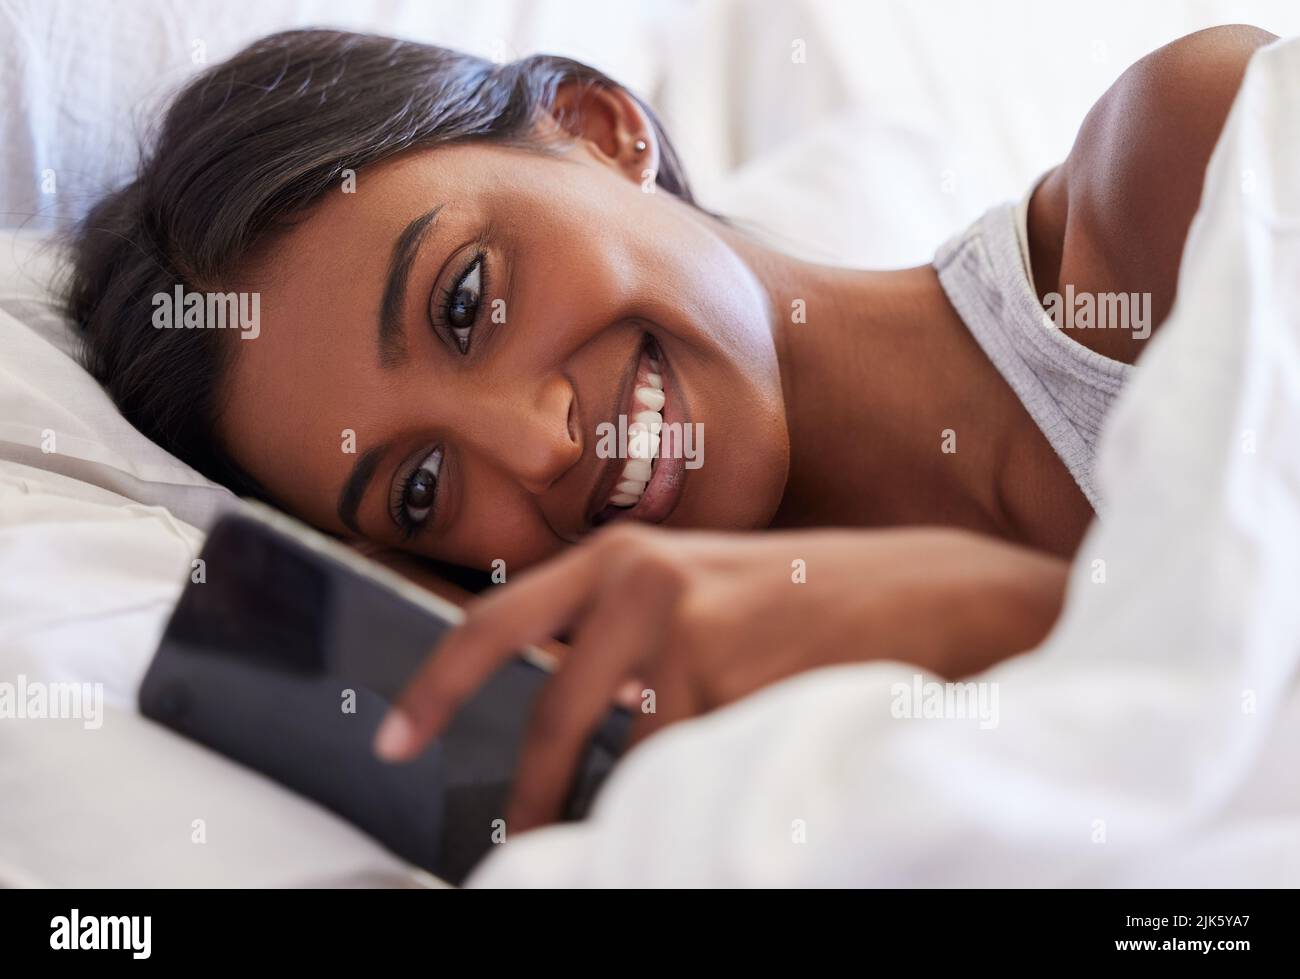 Das brachte mich zum Lächeln. Eine junge Frau benutzte ihr Handy, während sie in ihrem Bett lag. Stockfoto